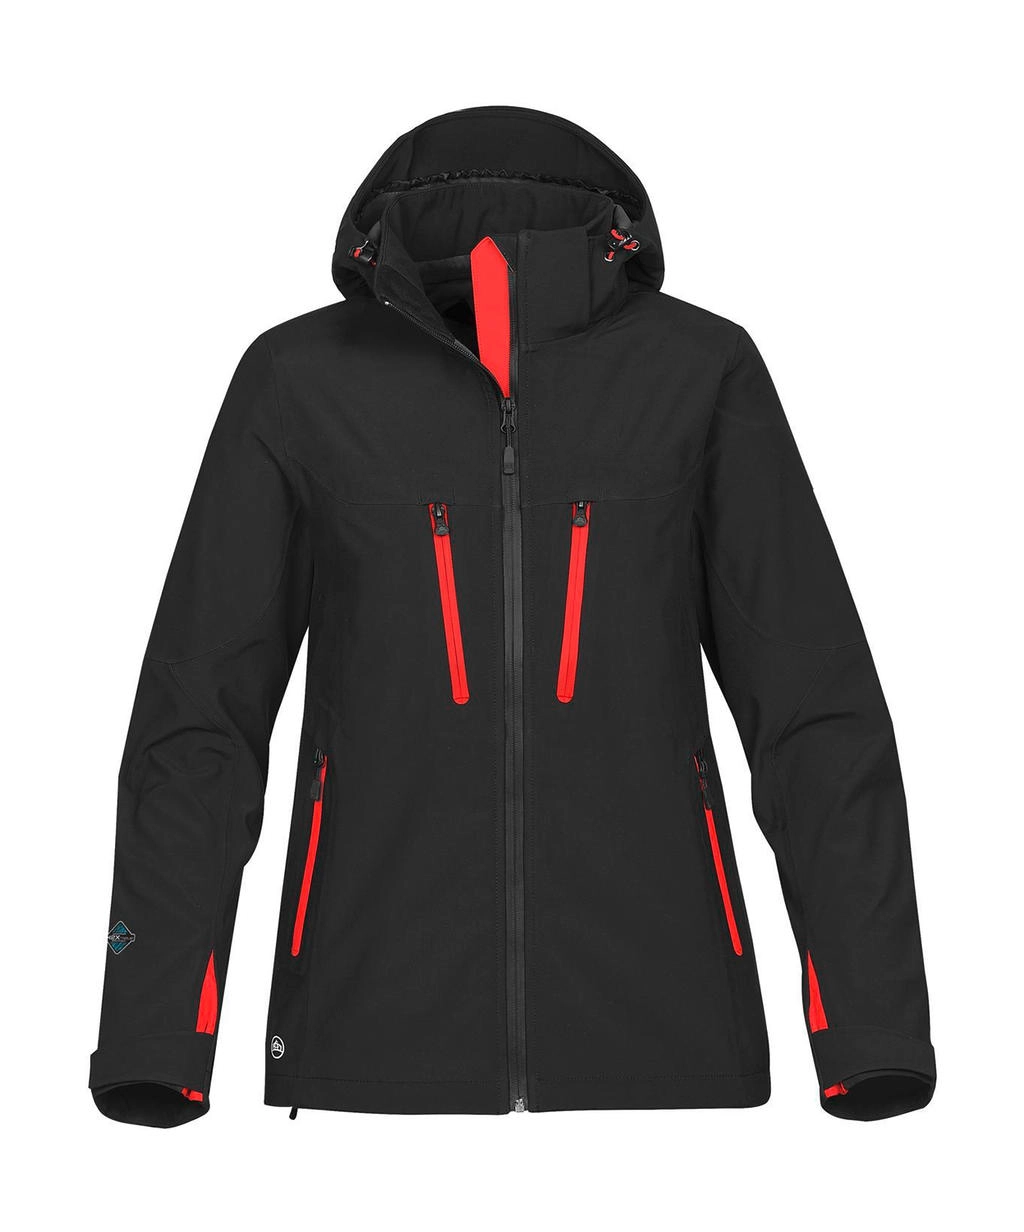 Women`s Patrol Softshell Jacket zum Besticken und Bedrucken in der Farbe Black/Bright Red mit Ihren Logo, Schriftzug oder Motiv.